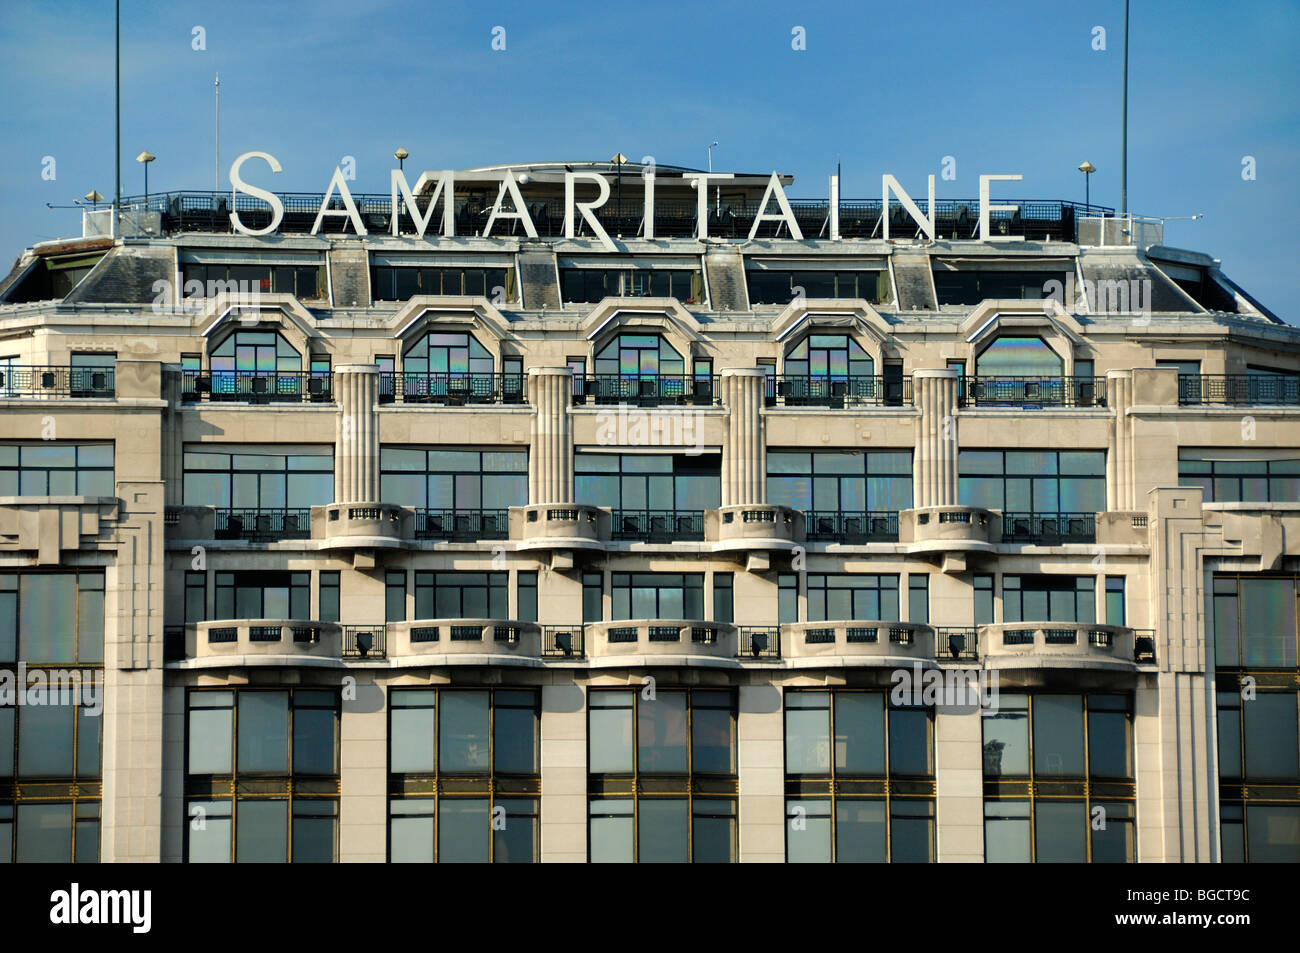 Grande magazzino la Samaritaine, costruito nel 1869, facciata Art Deco con balconi in pietra, Parigi, Francia Foto Stock